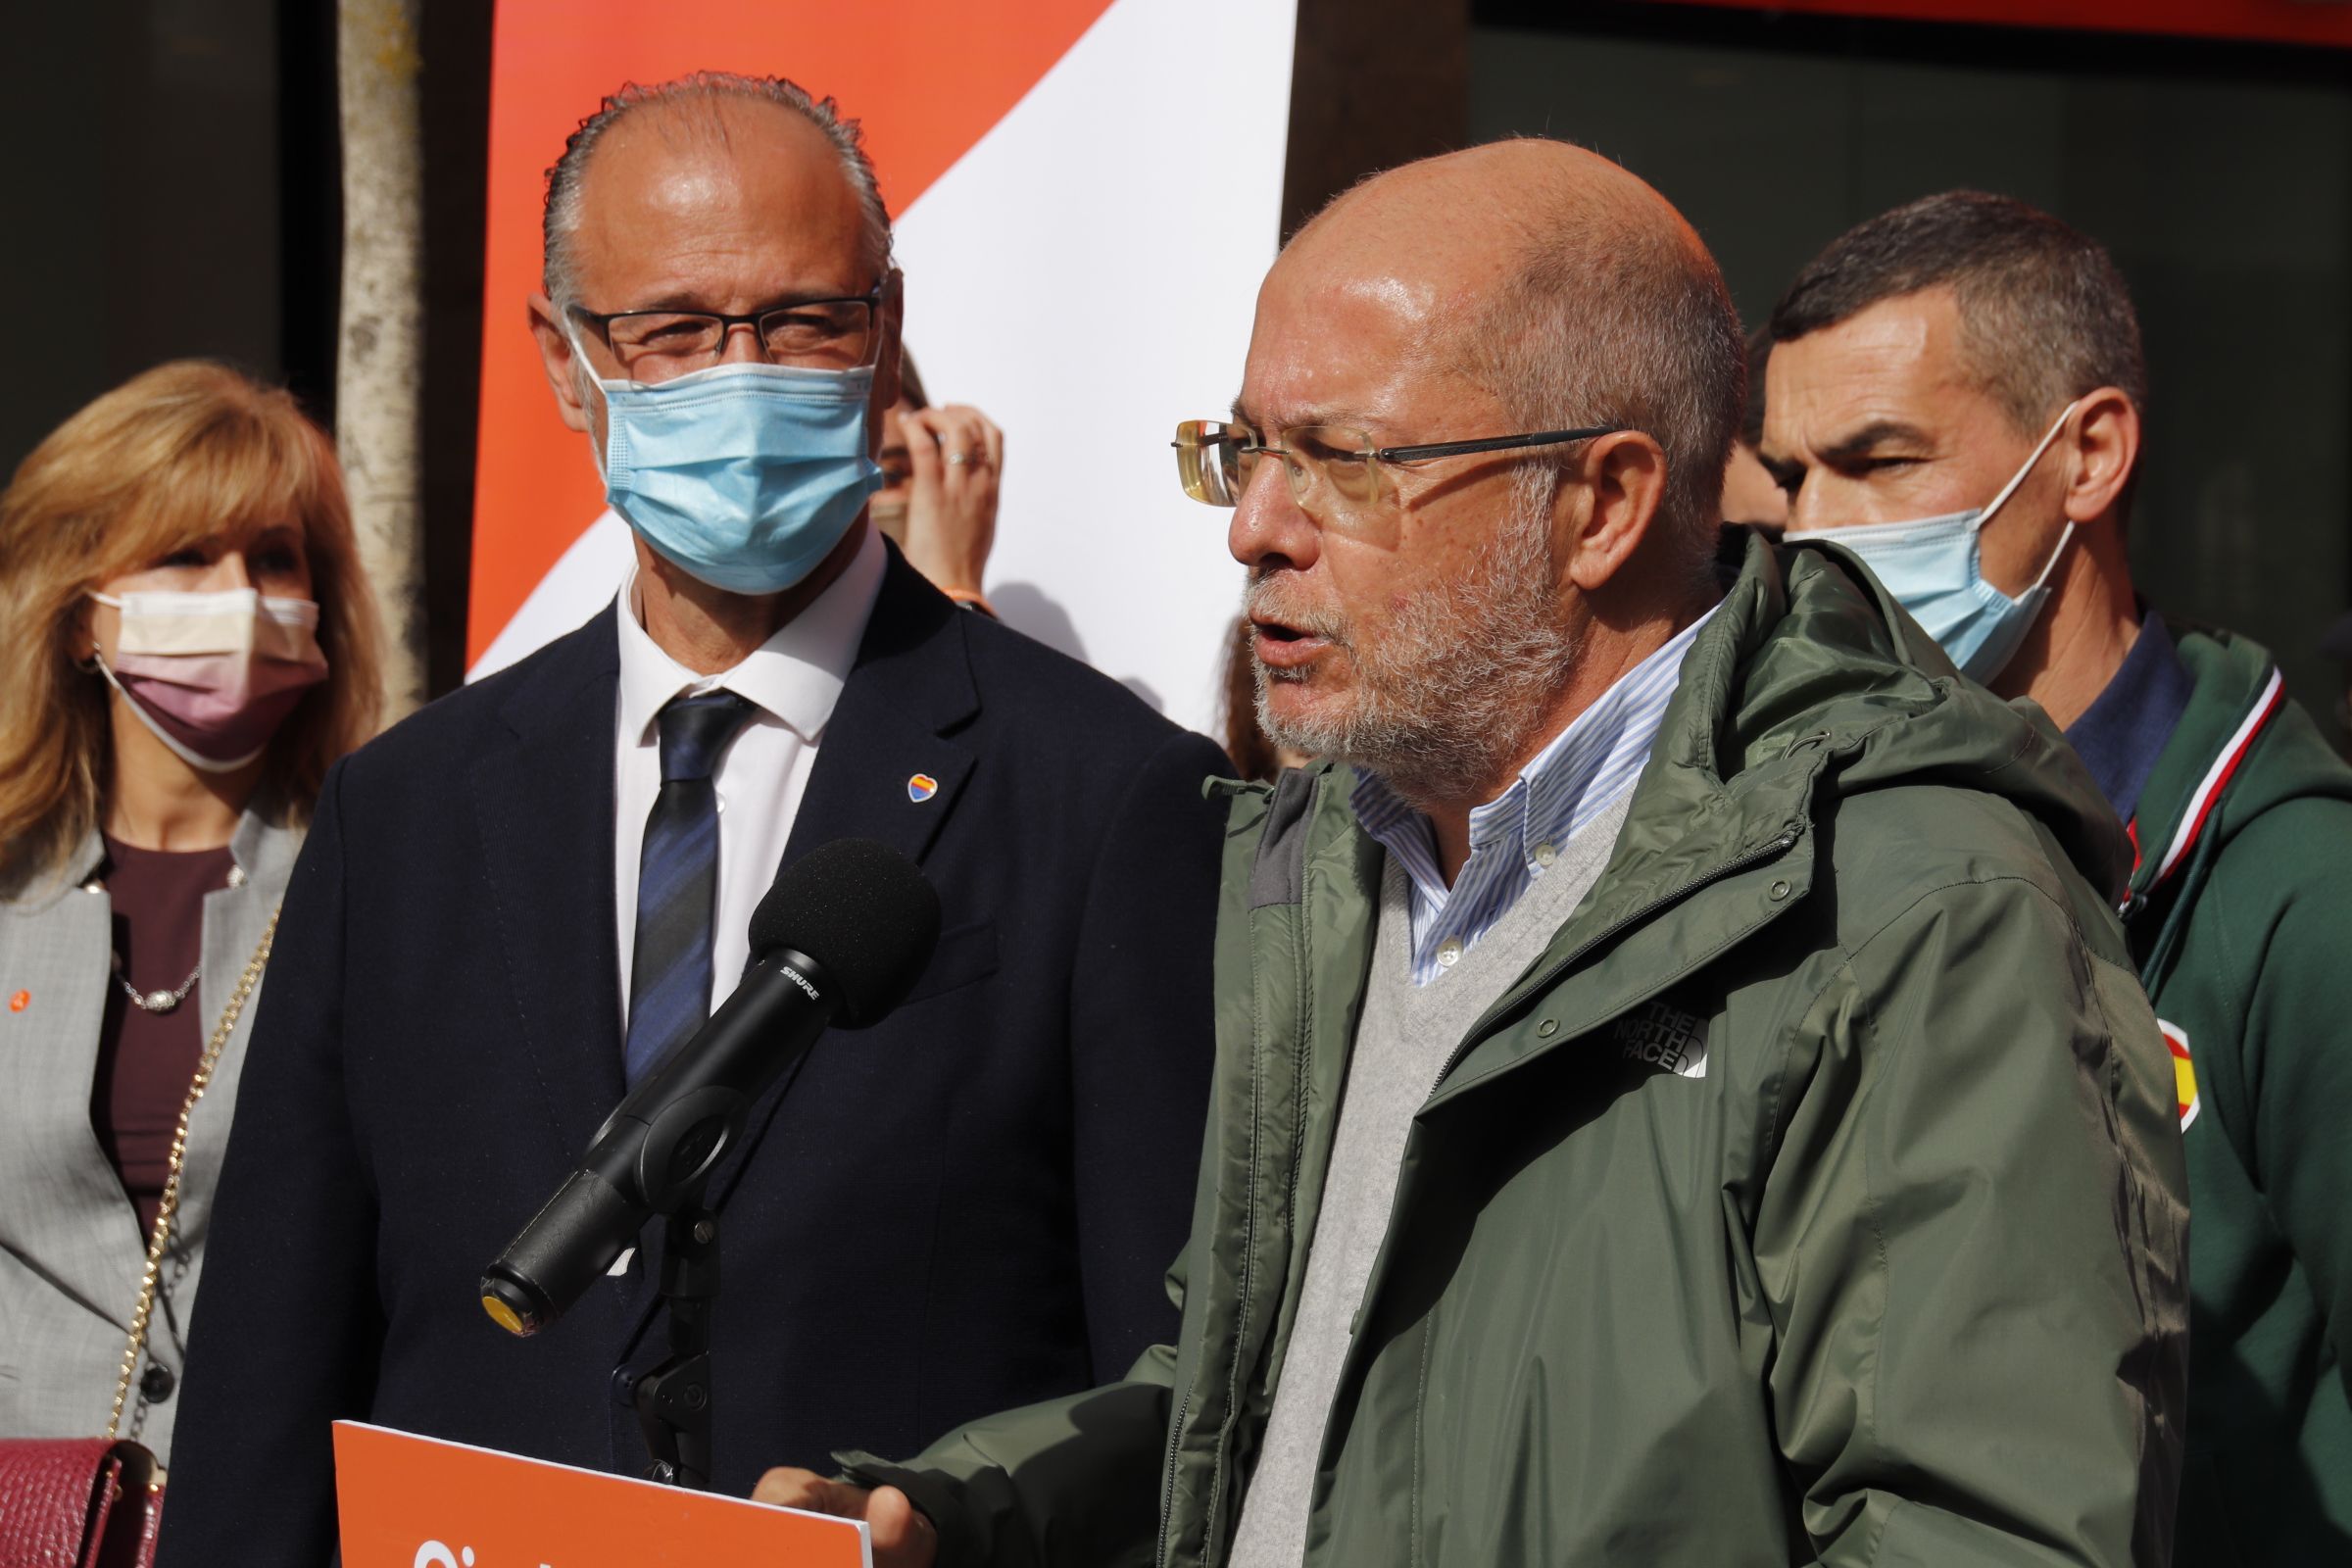 Francisco Igea y Luis Fuentes, atienden a los medios de comunicación en la carpa de Ciudadanos en Salamanca. Foto de archivo